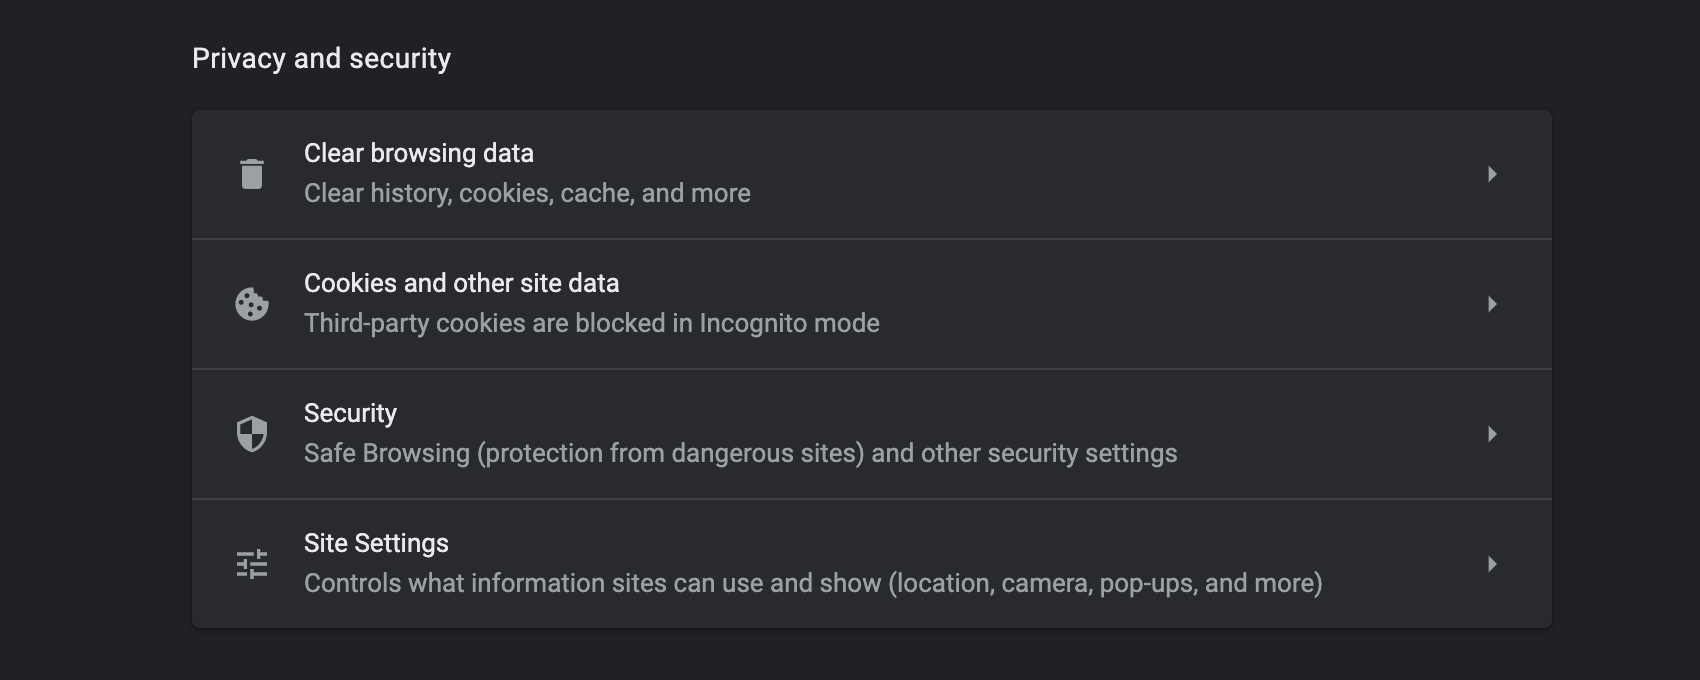 크롬 Settings의 Privacy and Security